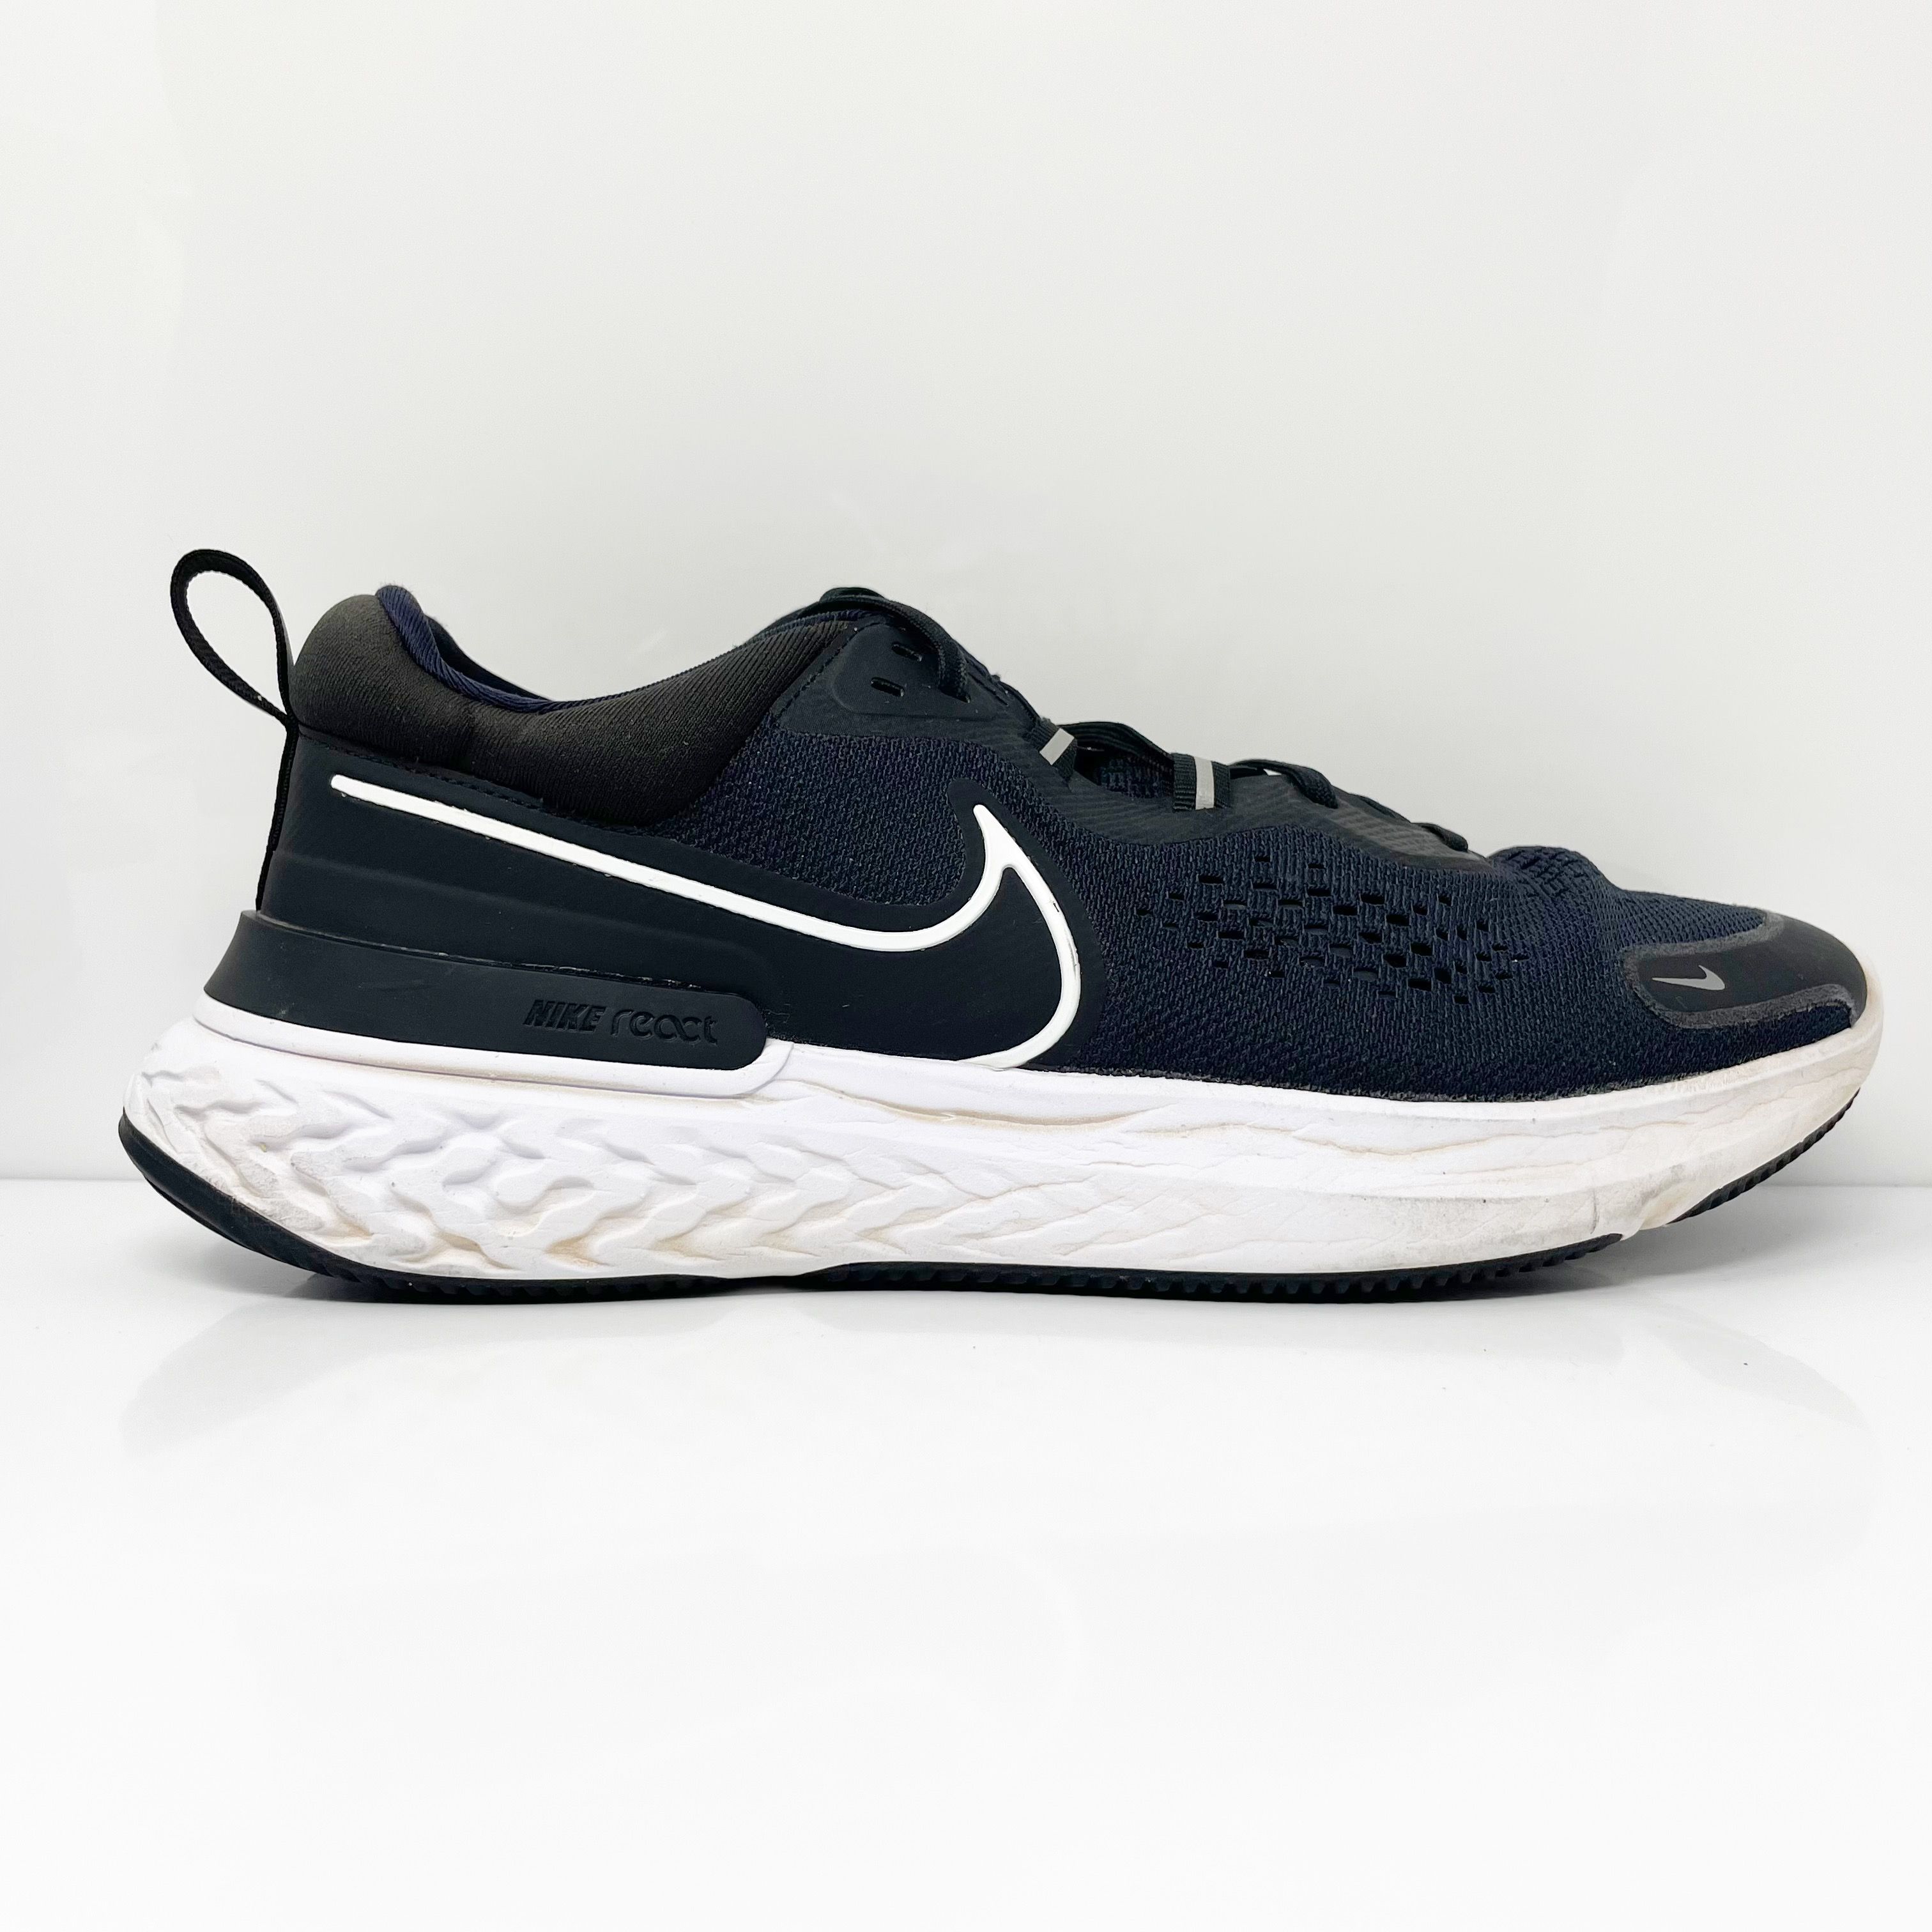 Мужские кроссовки Nike React Miler 2 CW7121-001, синие кроссовки, размер 10